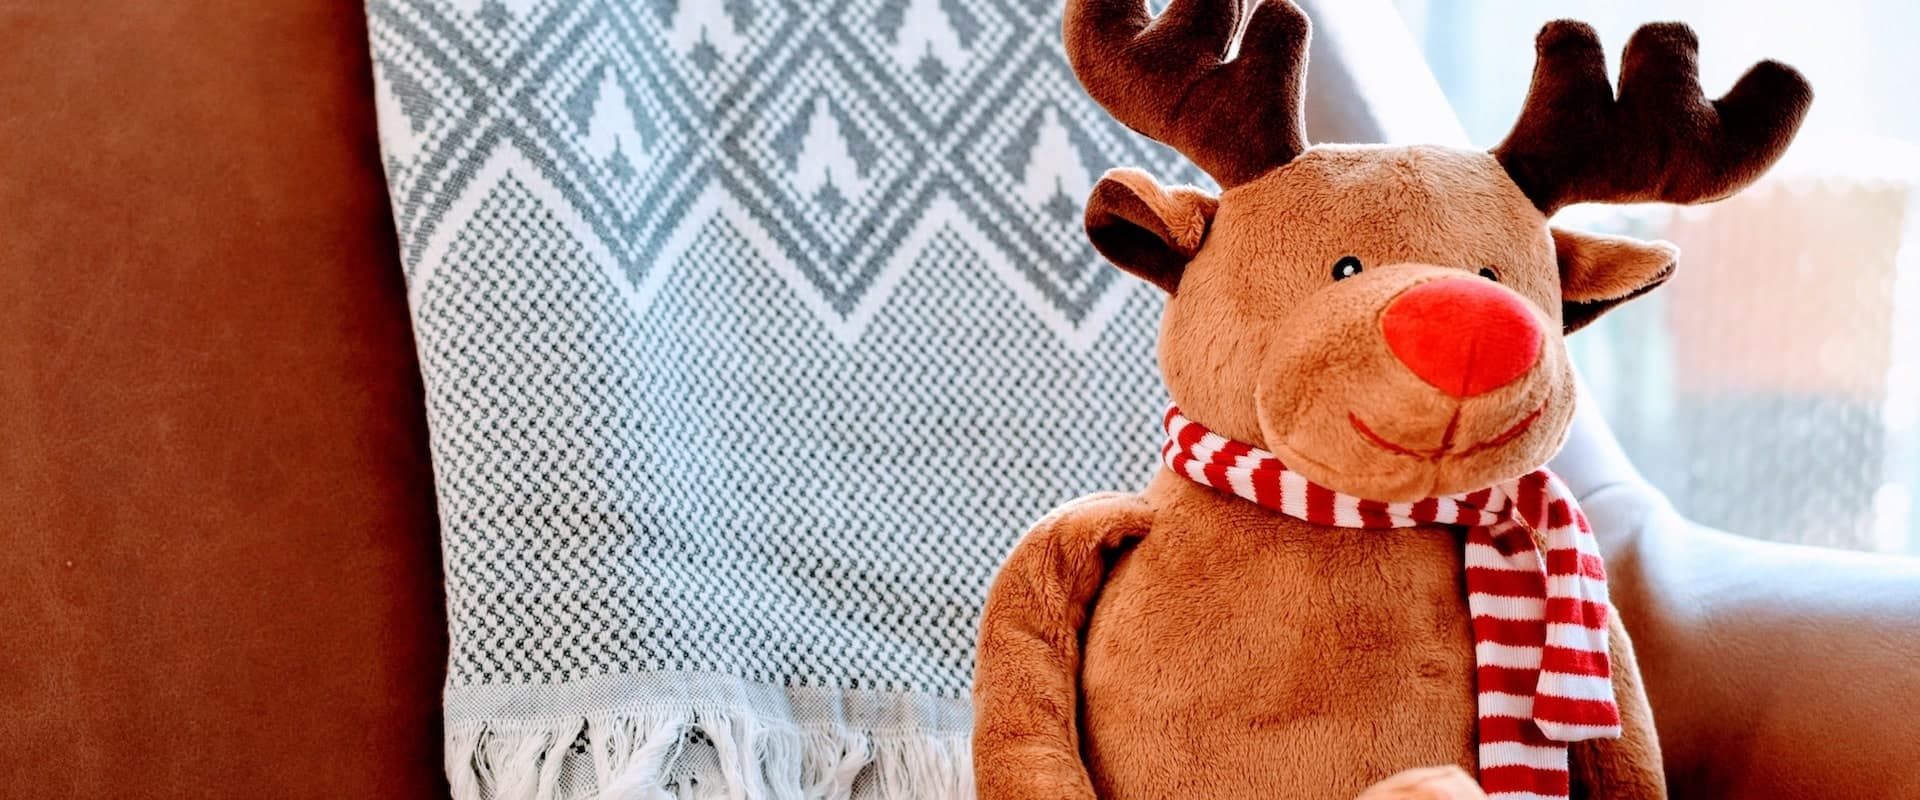 Weihnachtsmann Rentiere - Rudolph